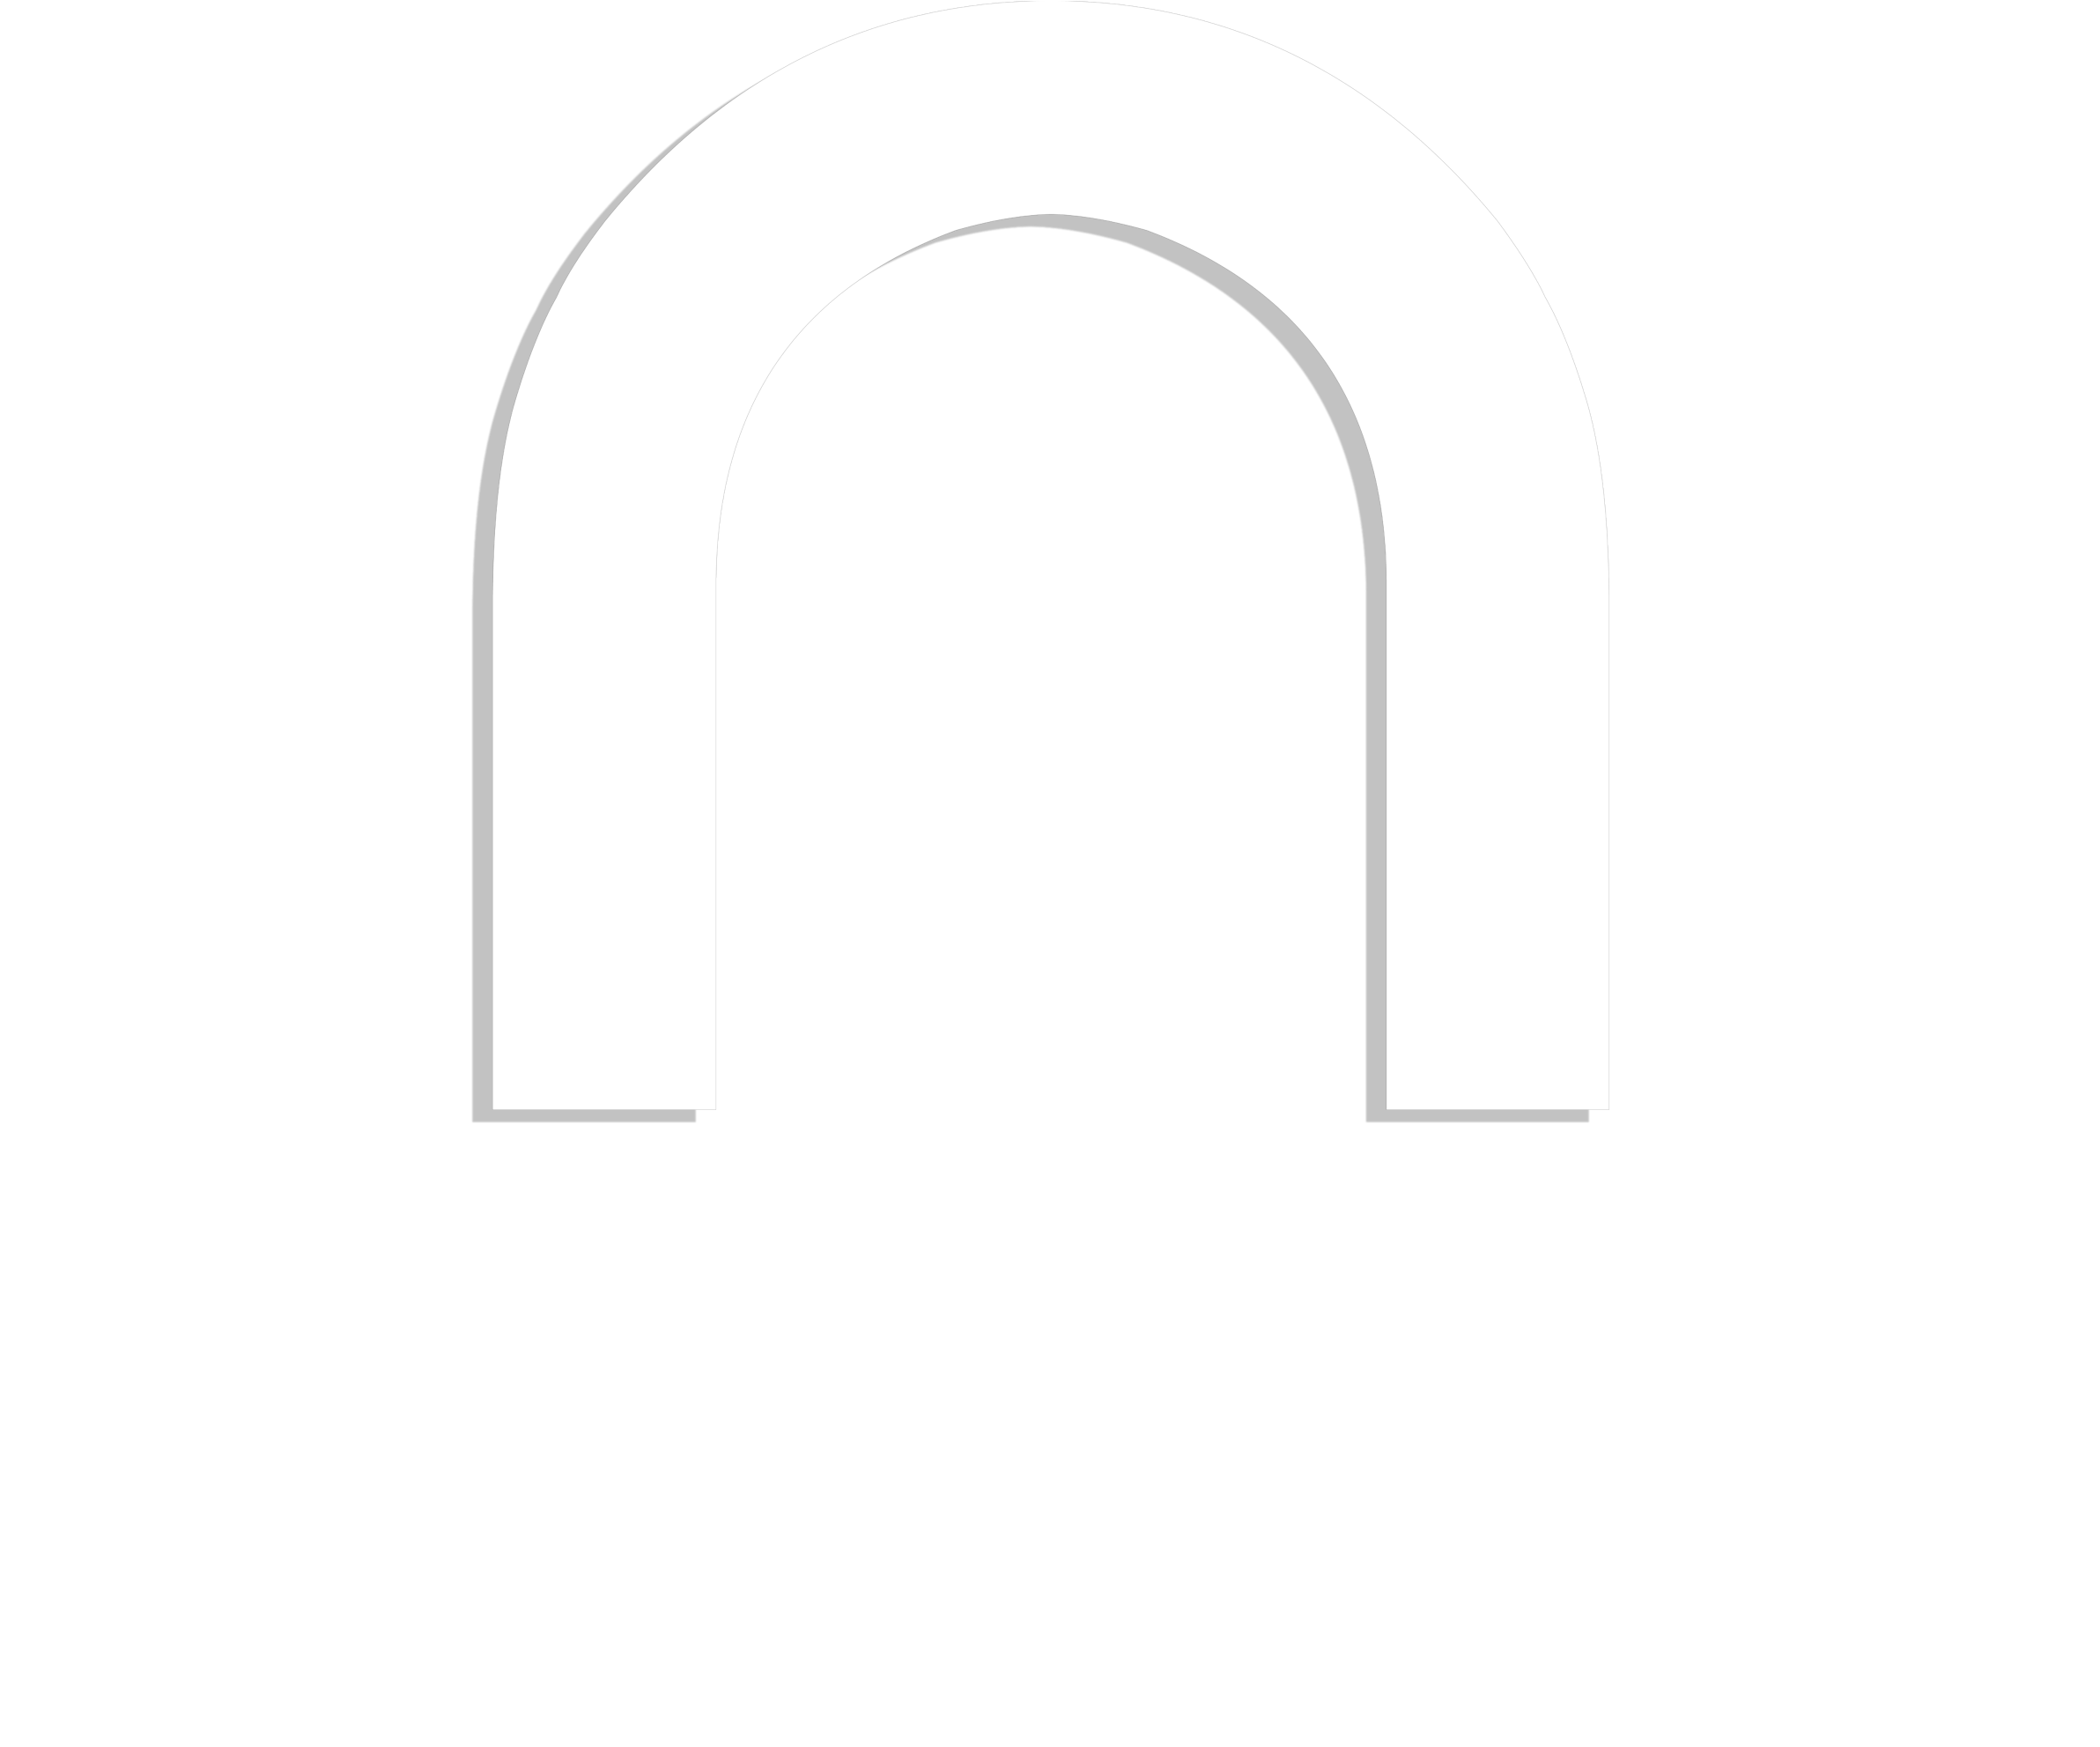 Noir24 Noir24 Noir24 Arch